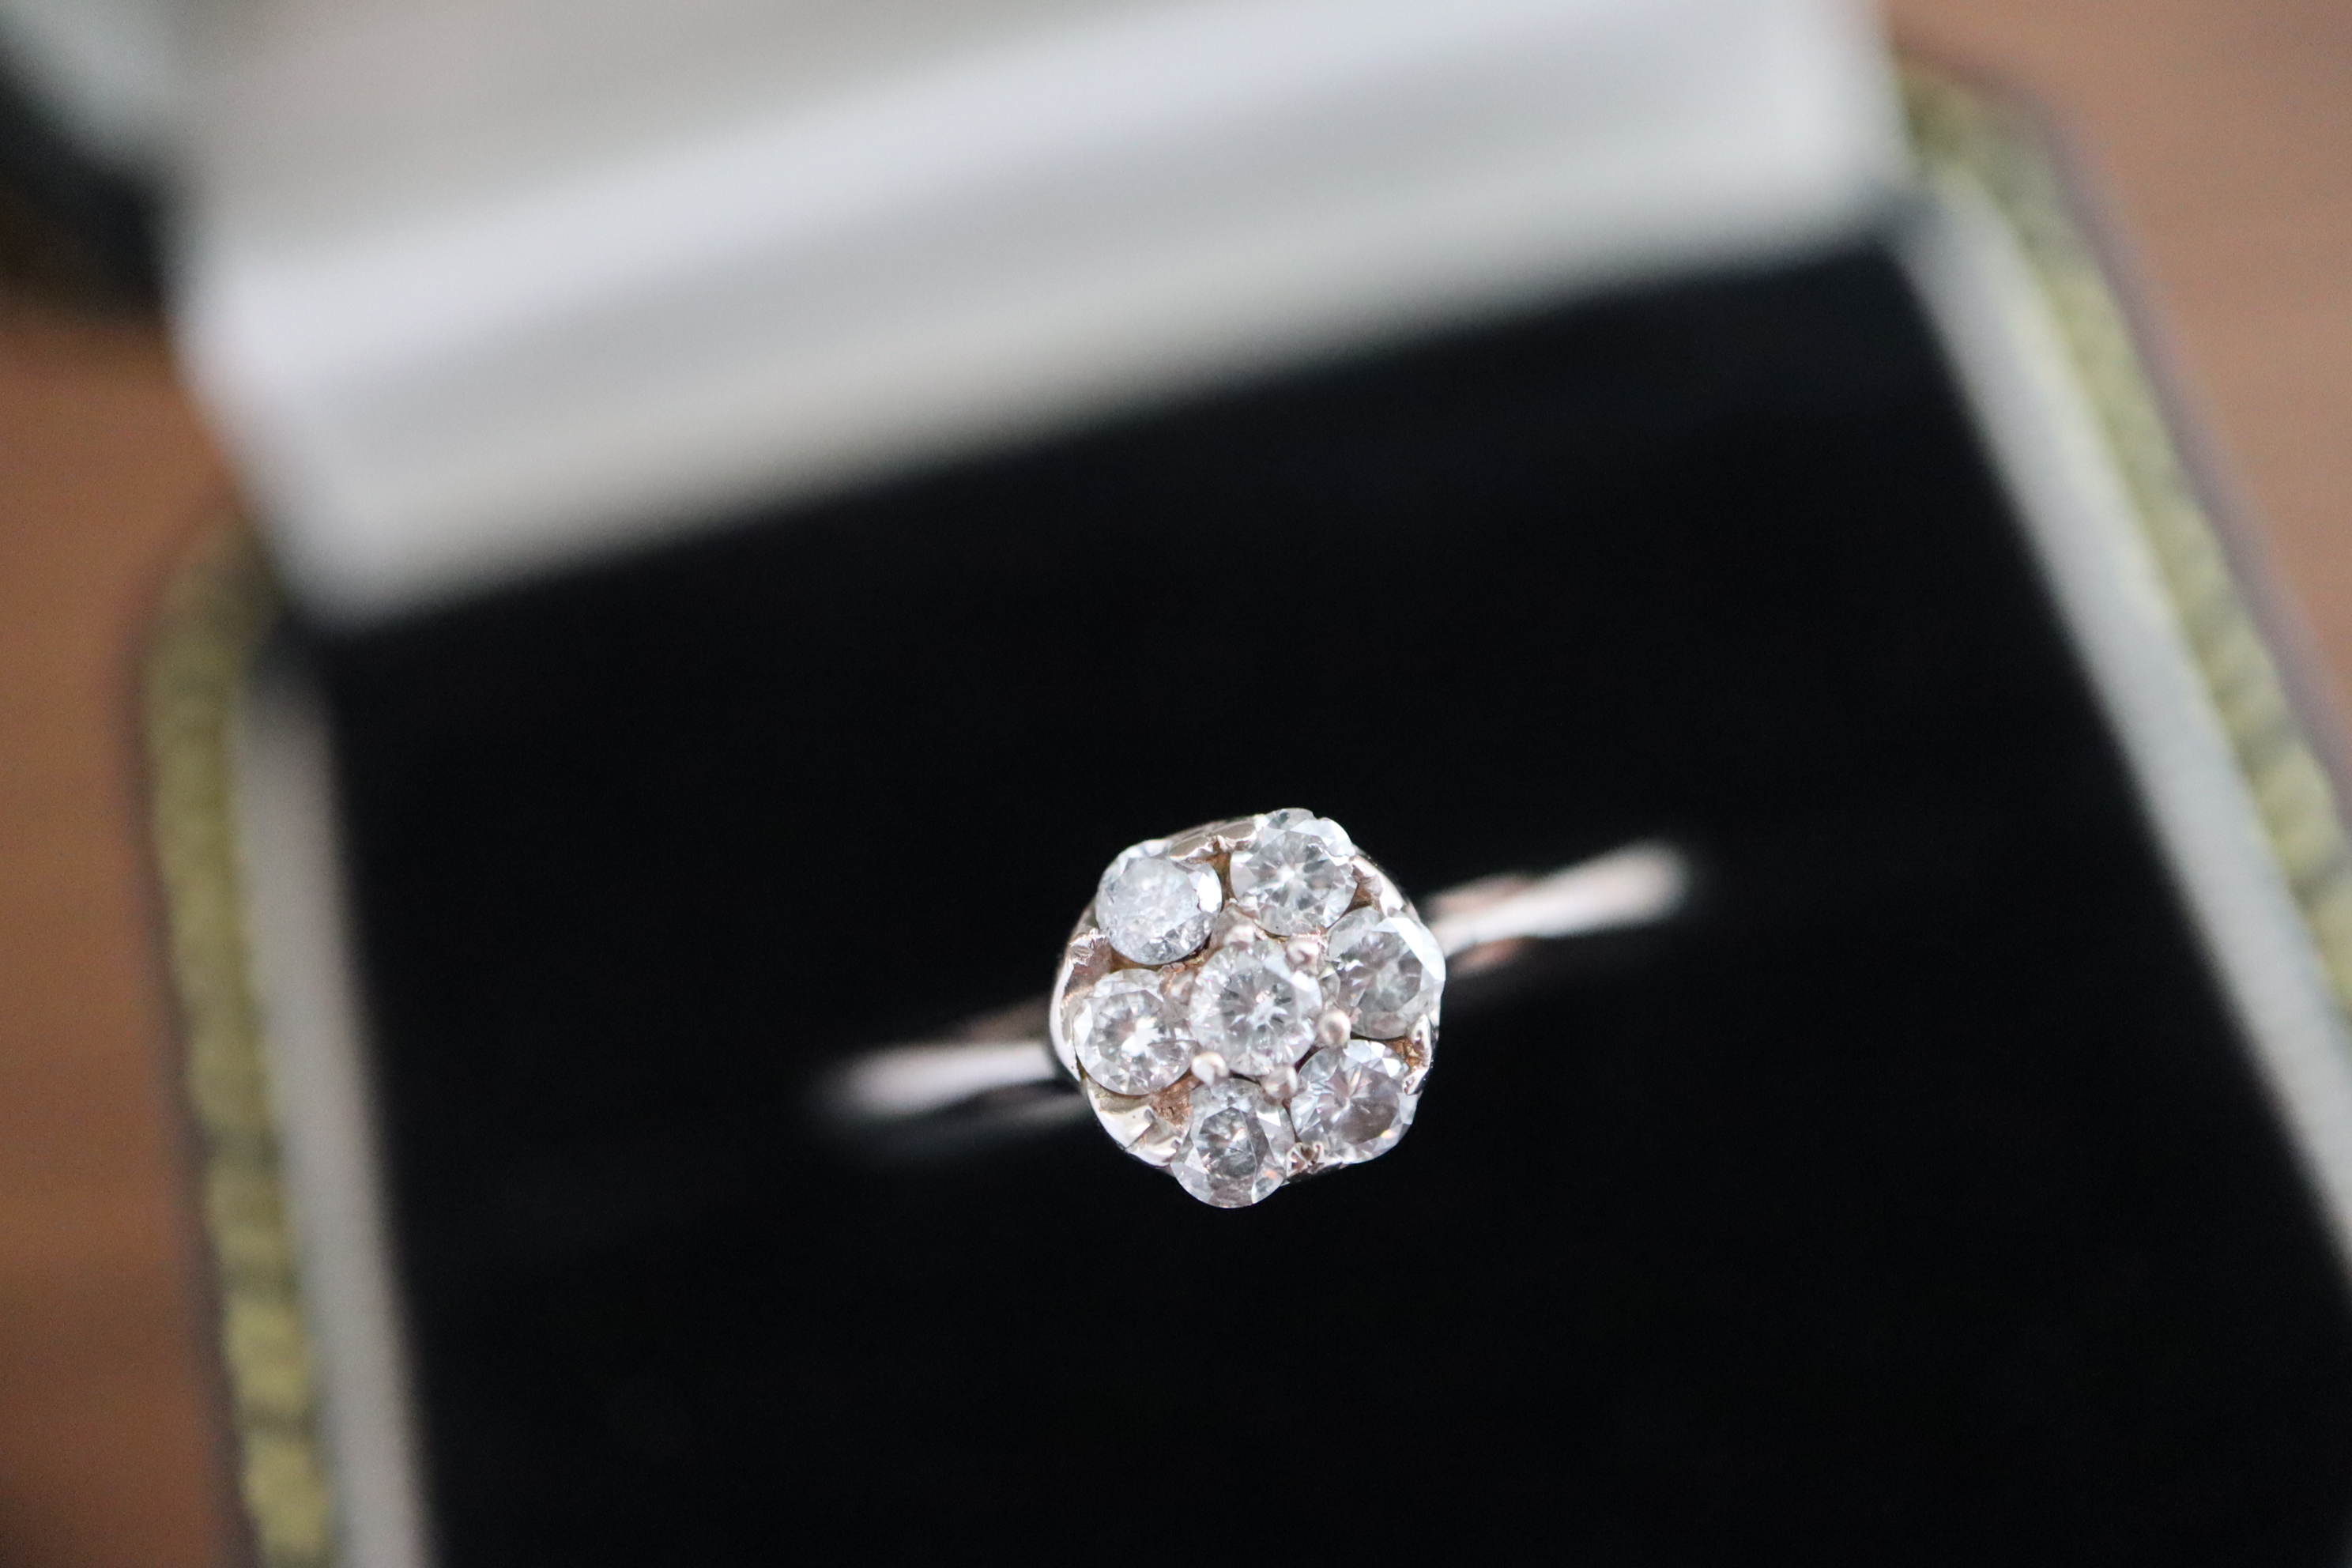 DIAMOND 'FLOWER DESIGN' RING - UK SIZE: O